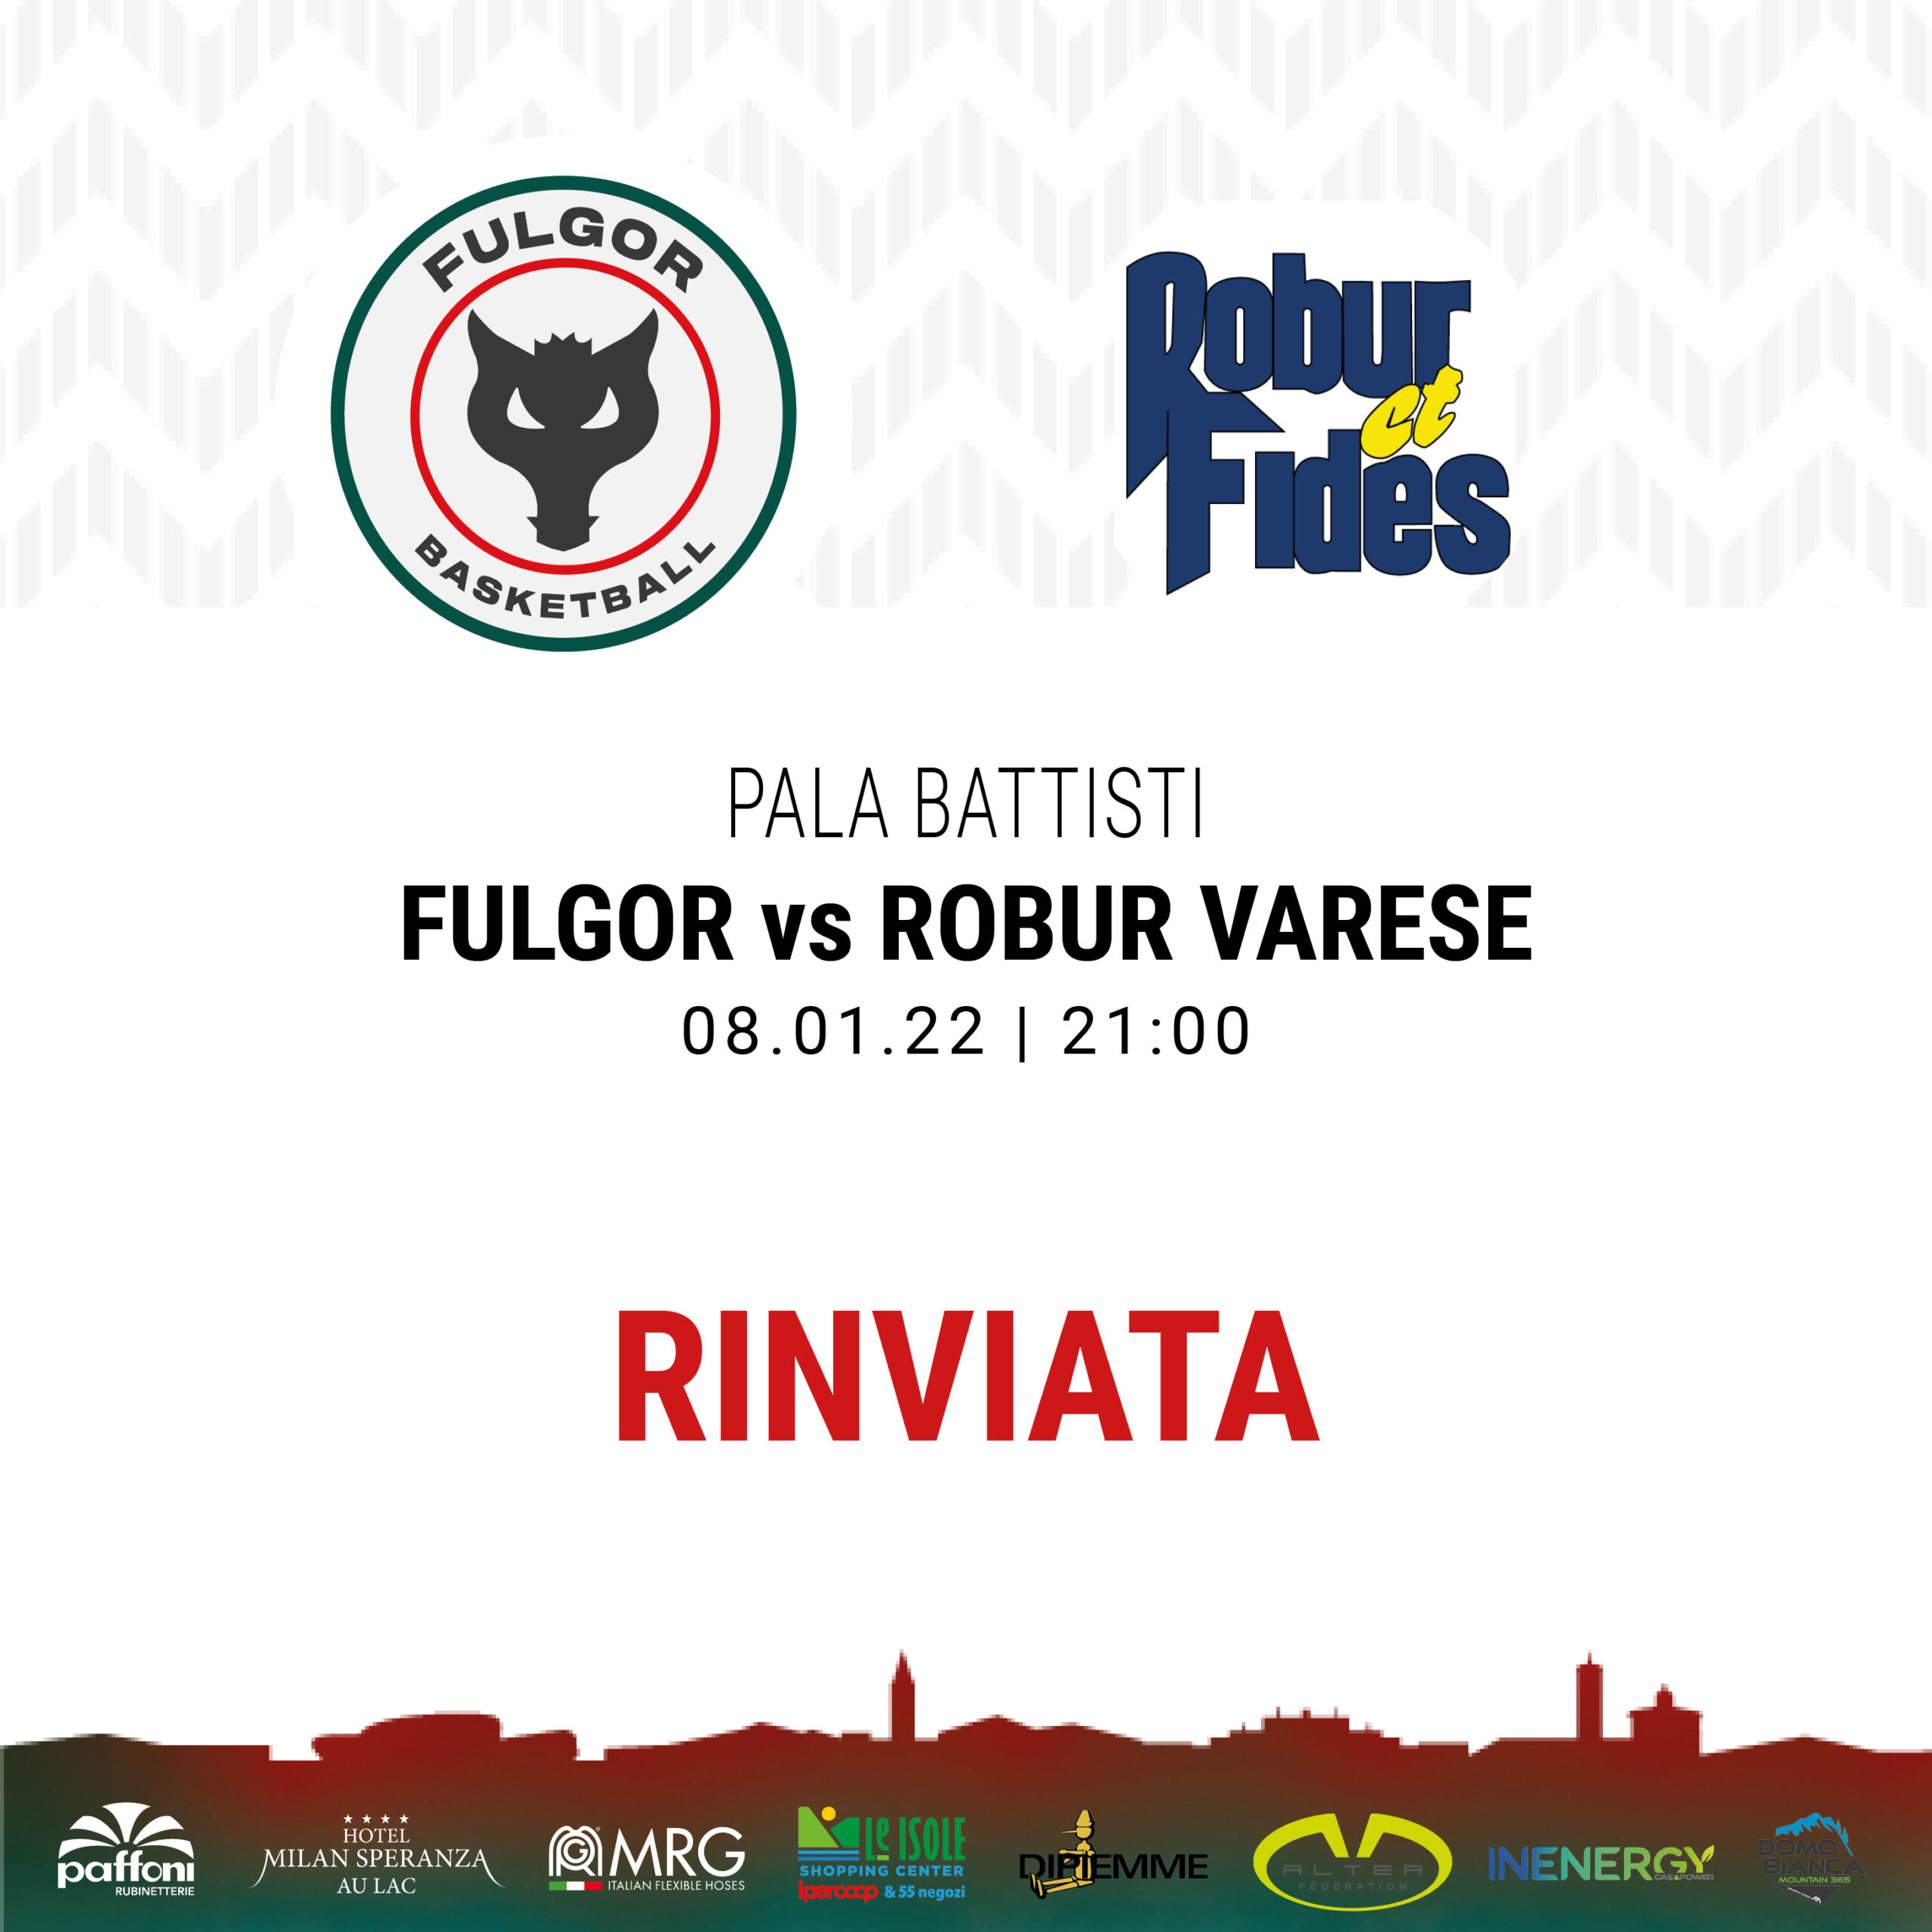 Rinviata la partita prevista per sabato 8 gennaio contro la Robur et Fides Varese